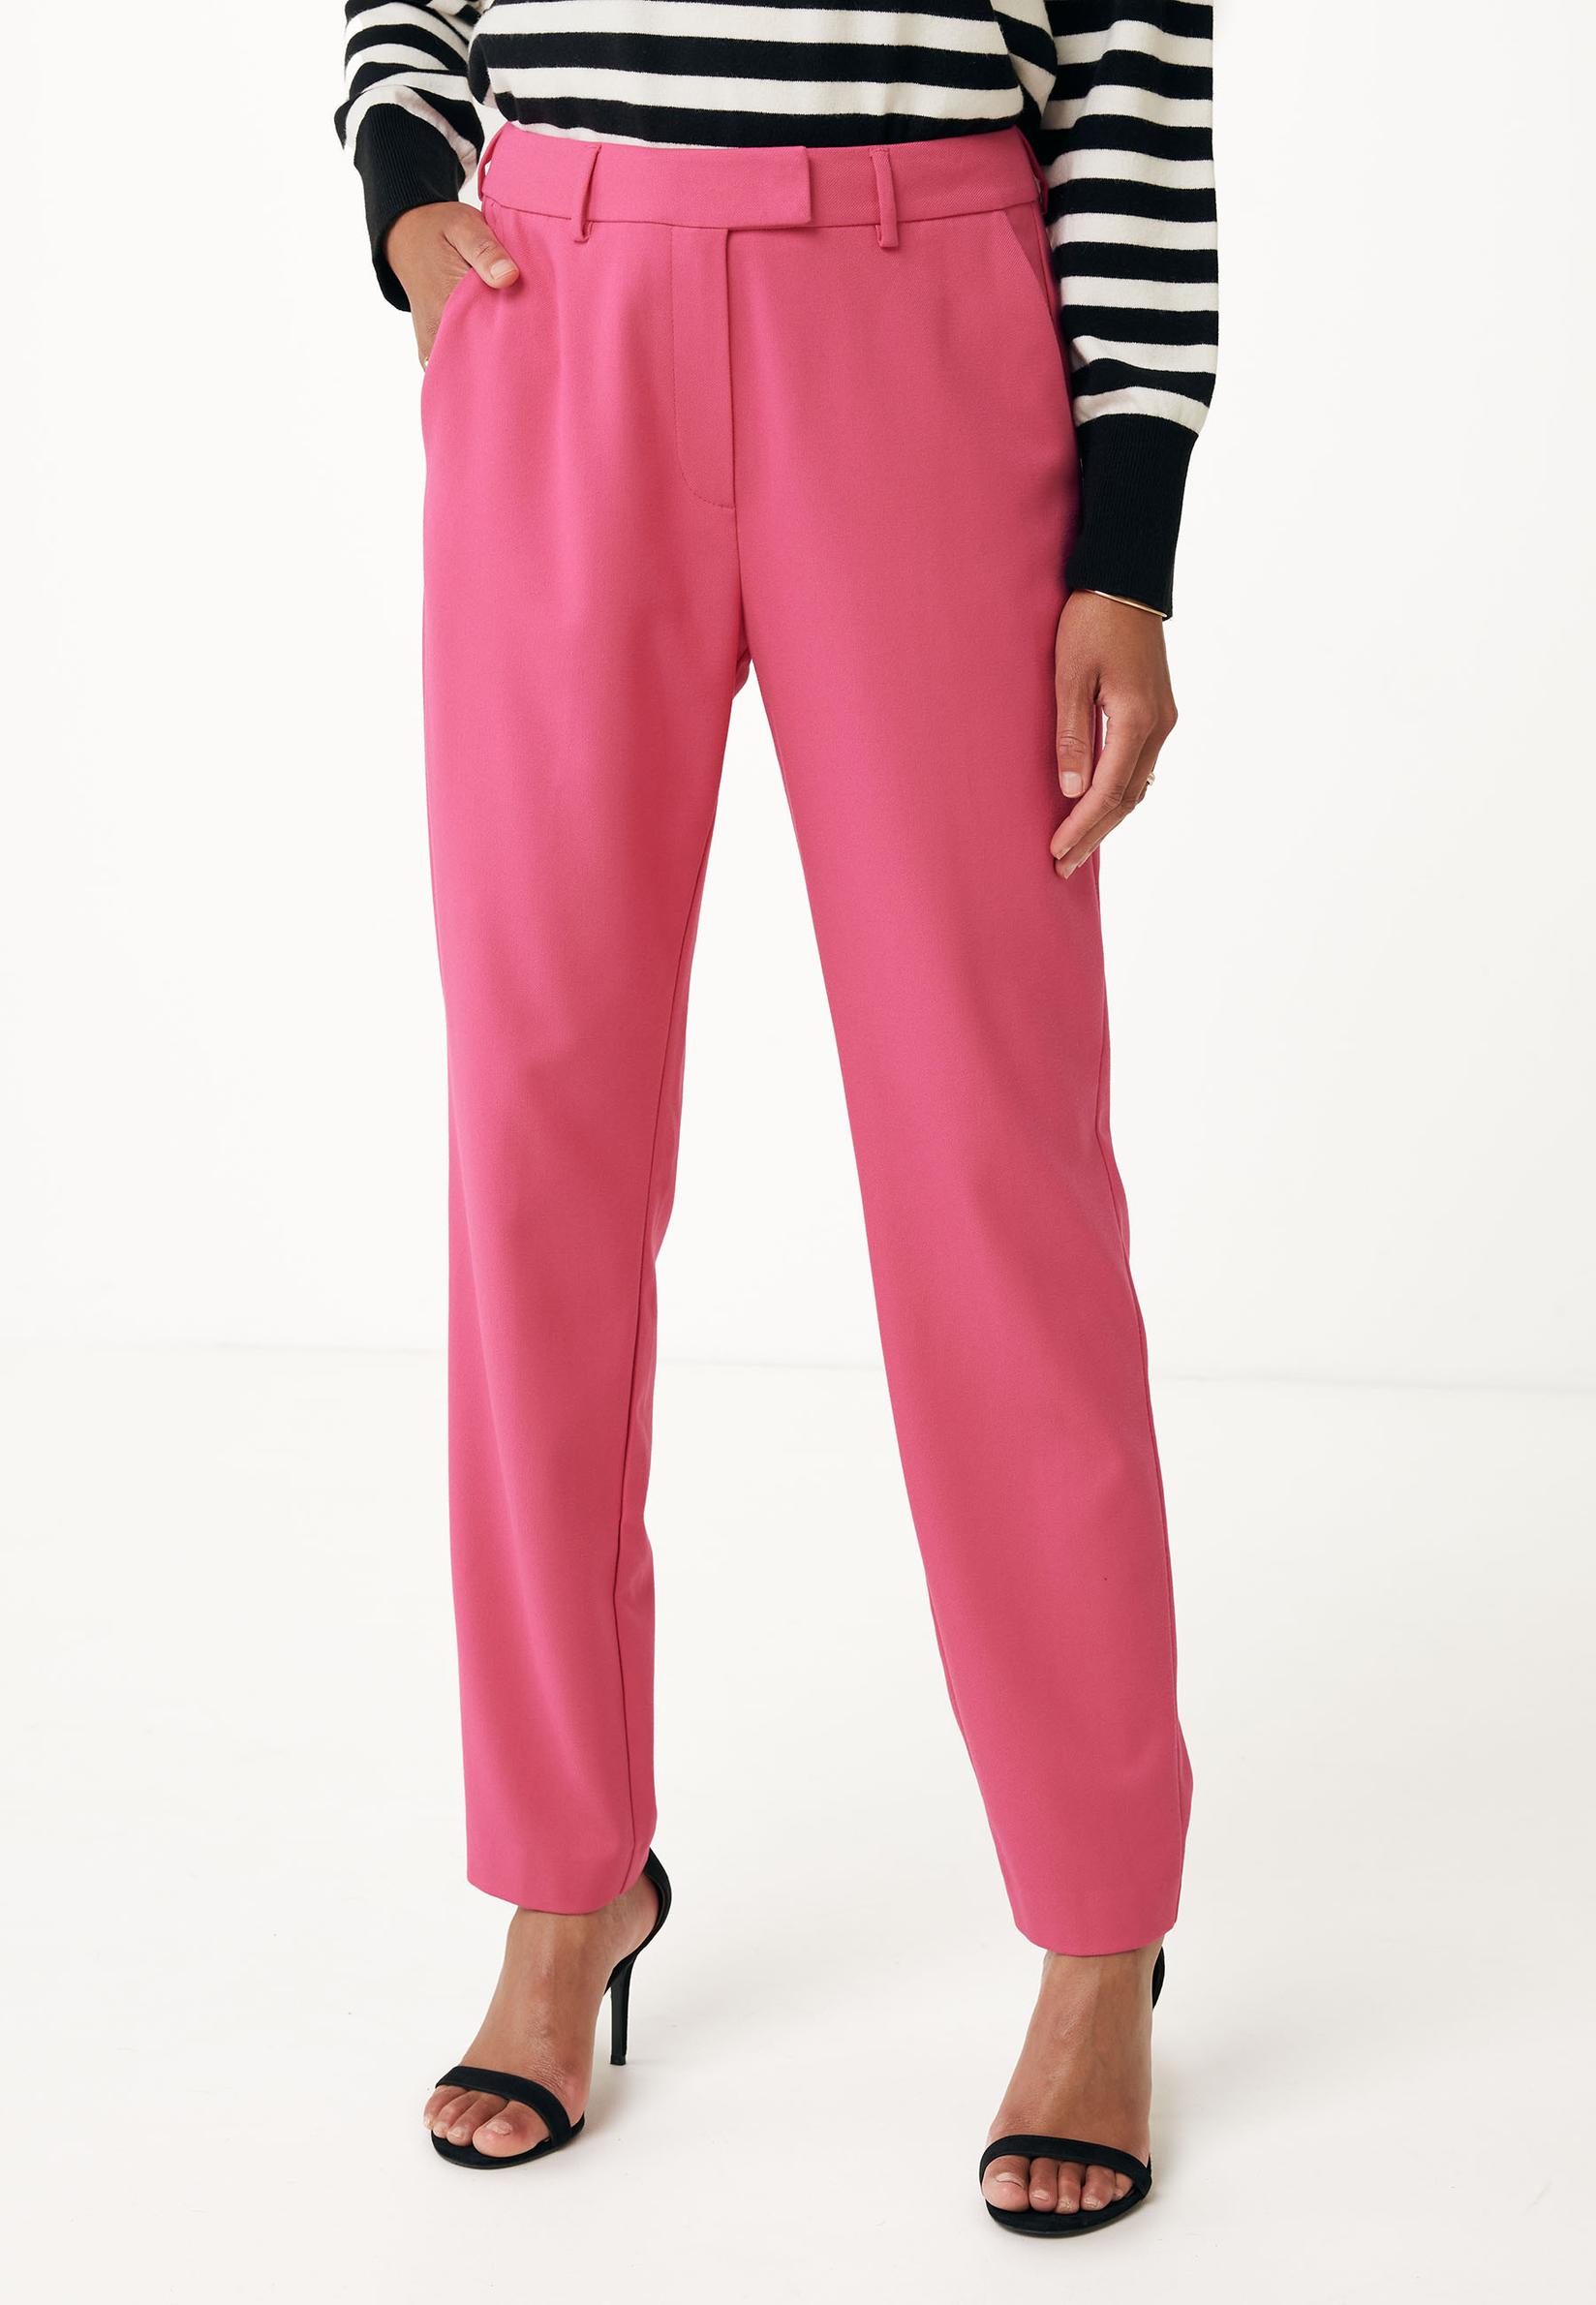 Selected image for MEXX Ženske ravne pantalone roze